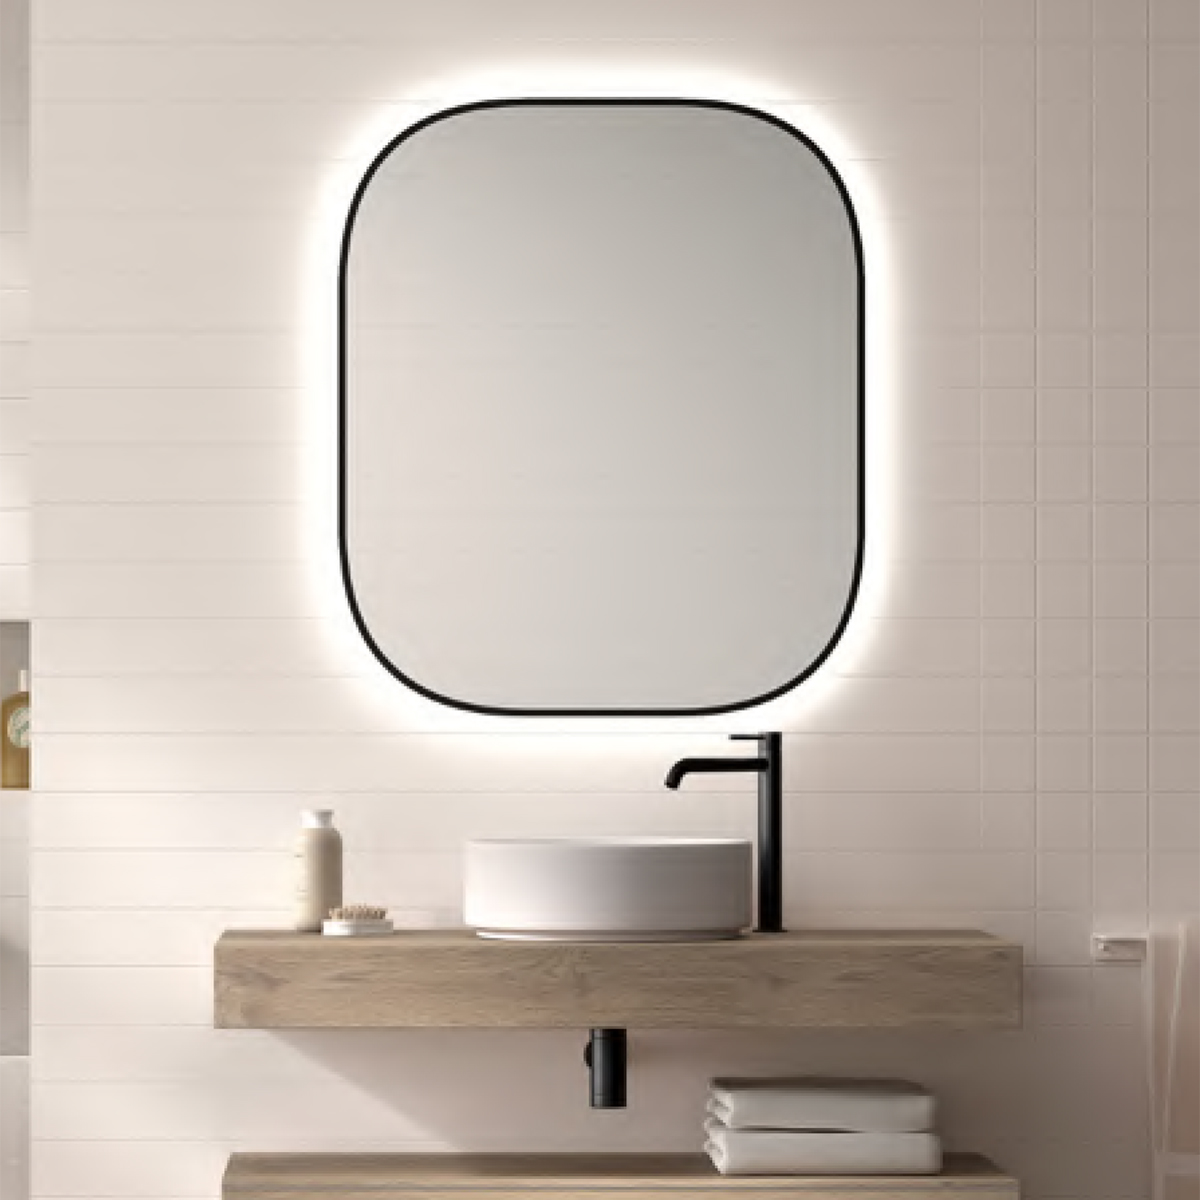 Espejo De Baño Retro-iluminado CLOE (Marco negro serigrafiado en el espejo)  - Muebles de Baño Los Pedroches